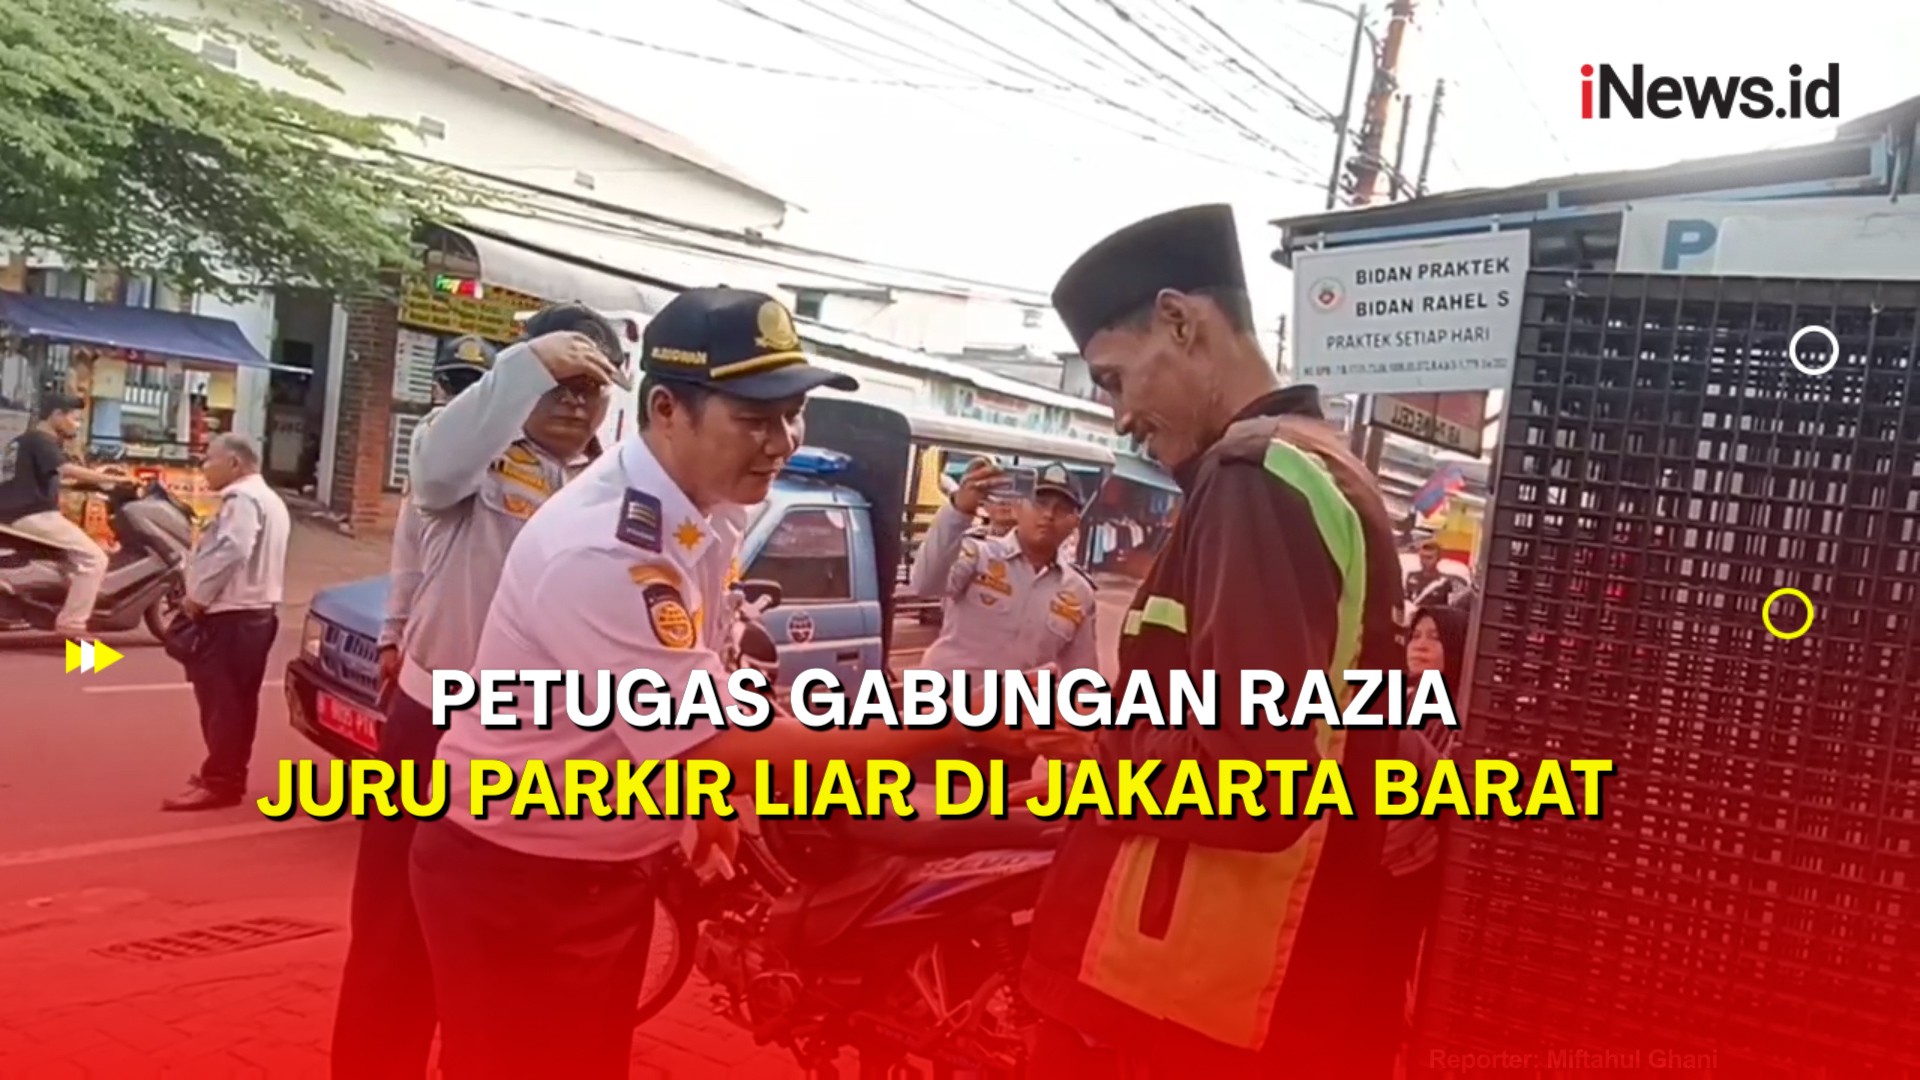 Razia Juru Parkir Liar di Jakarta Barat, Petugas Gabungan Amankan 15 Orang 